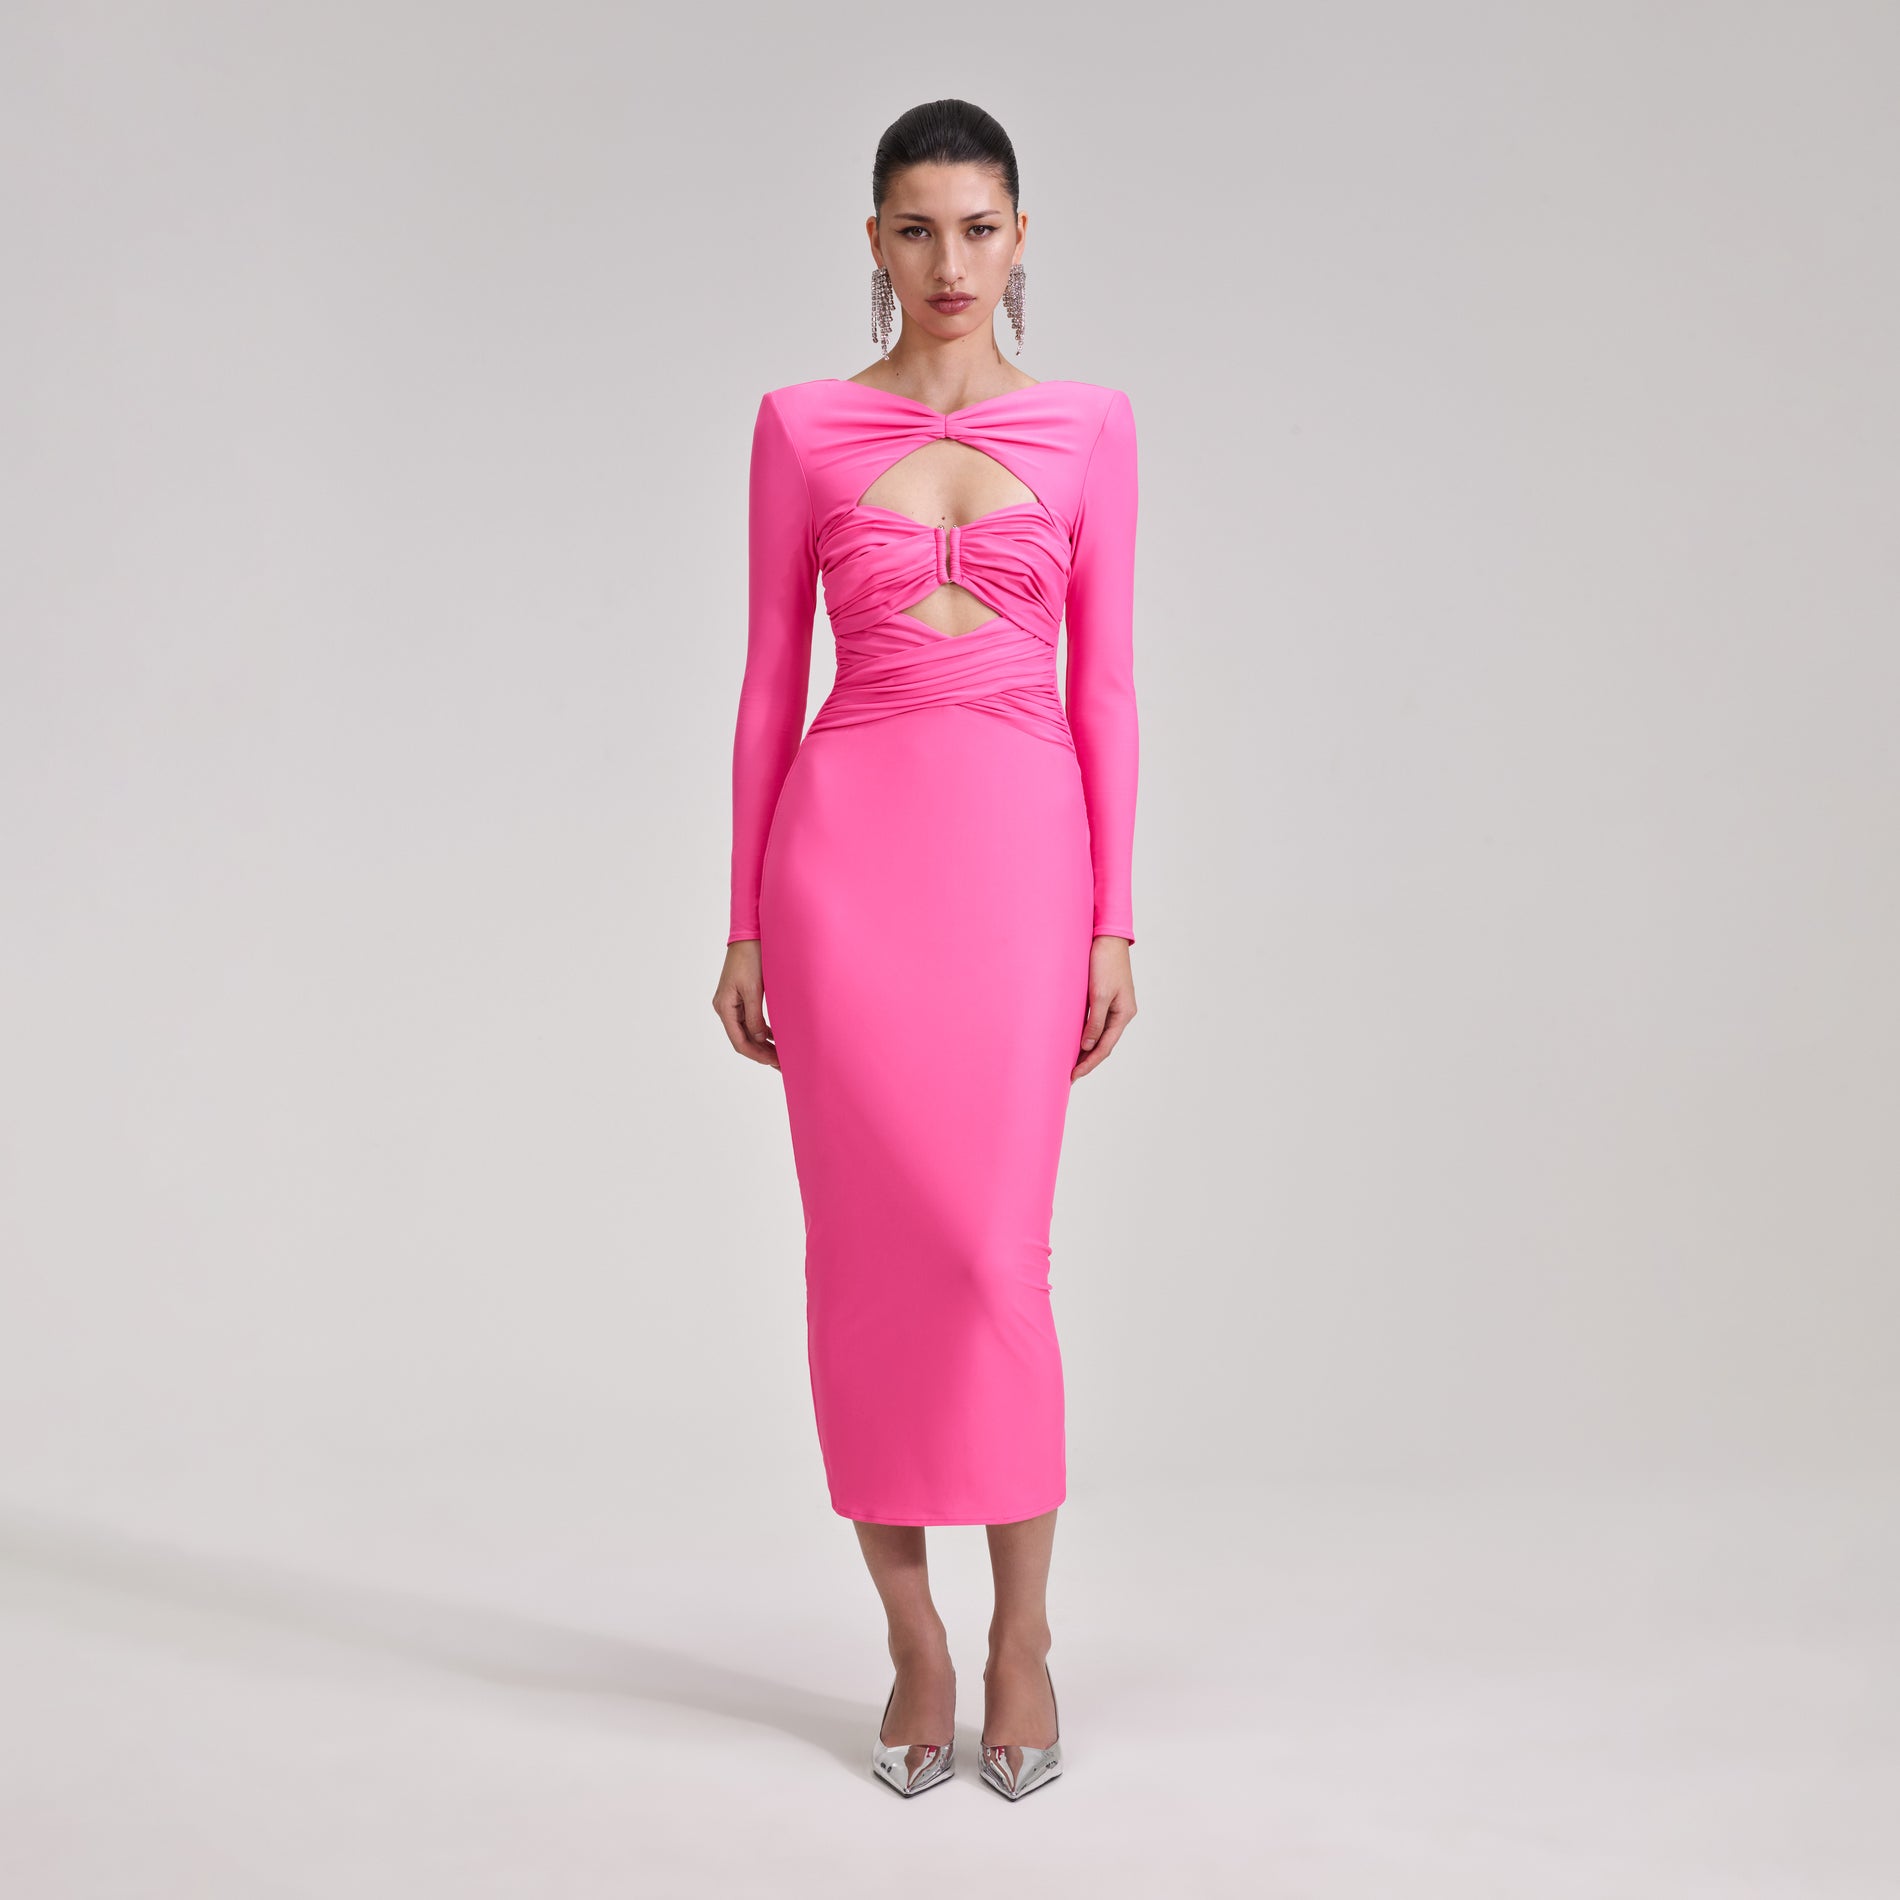 A woman wearing the Pink Jersey Midi Dress